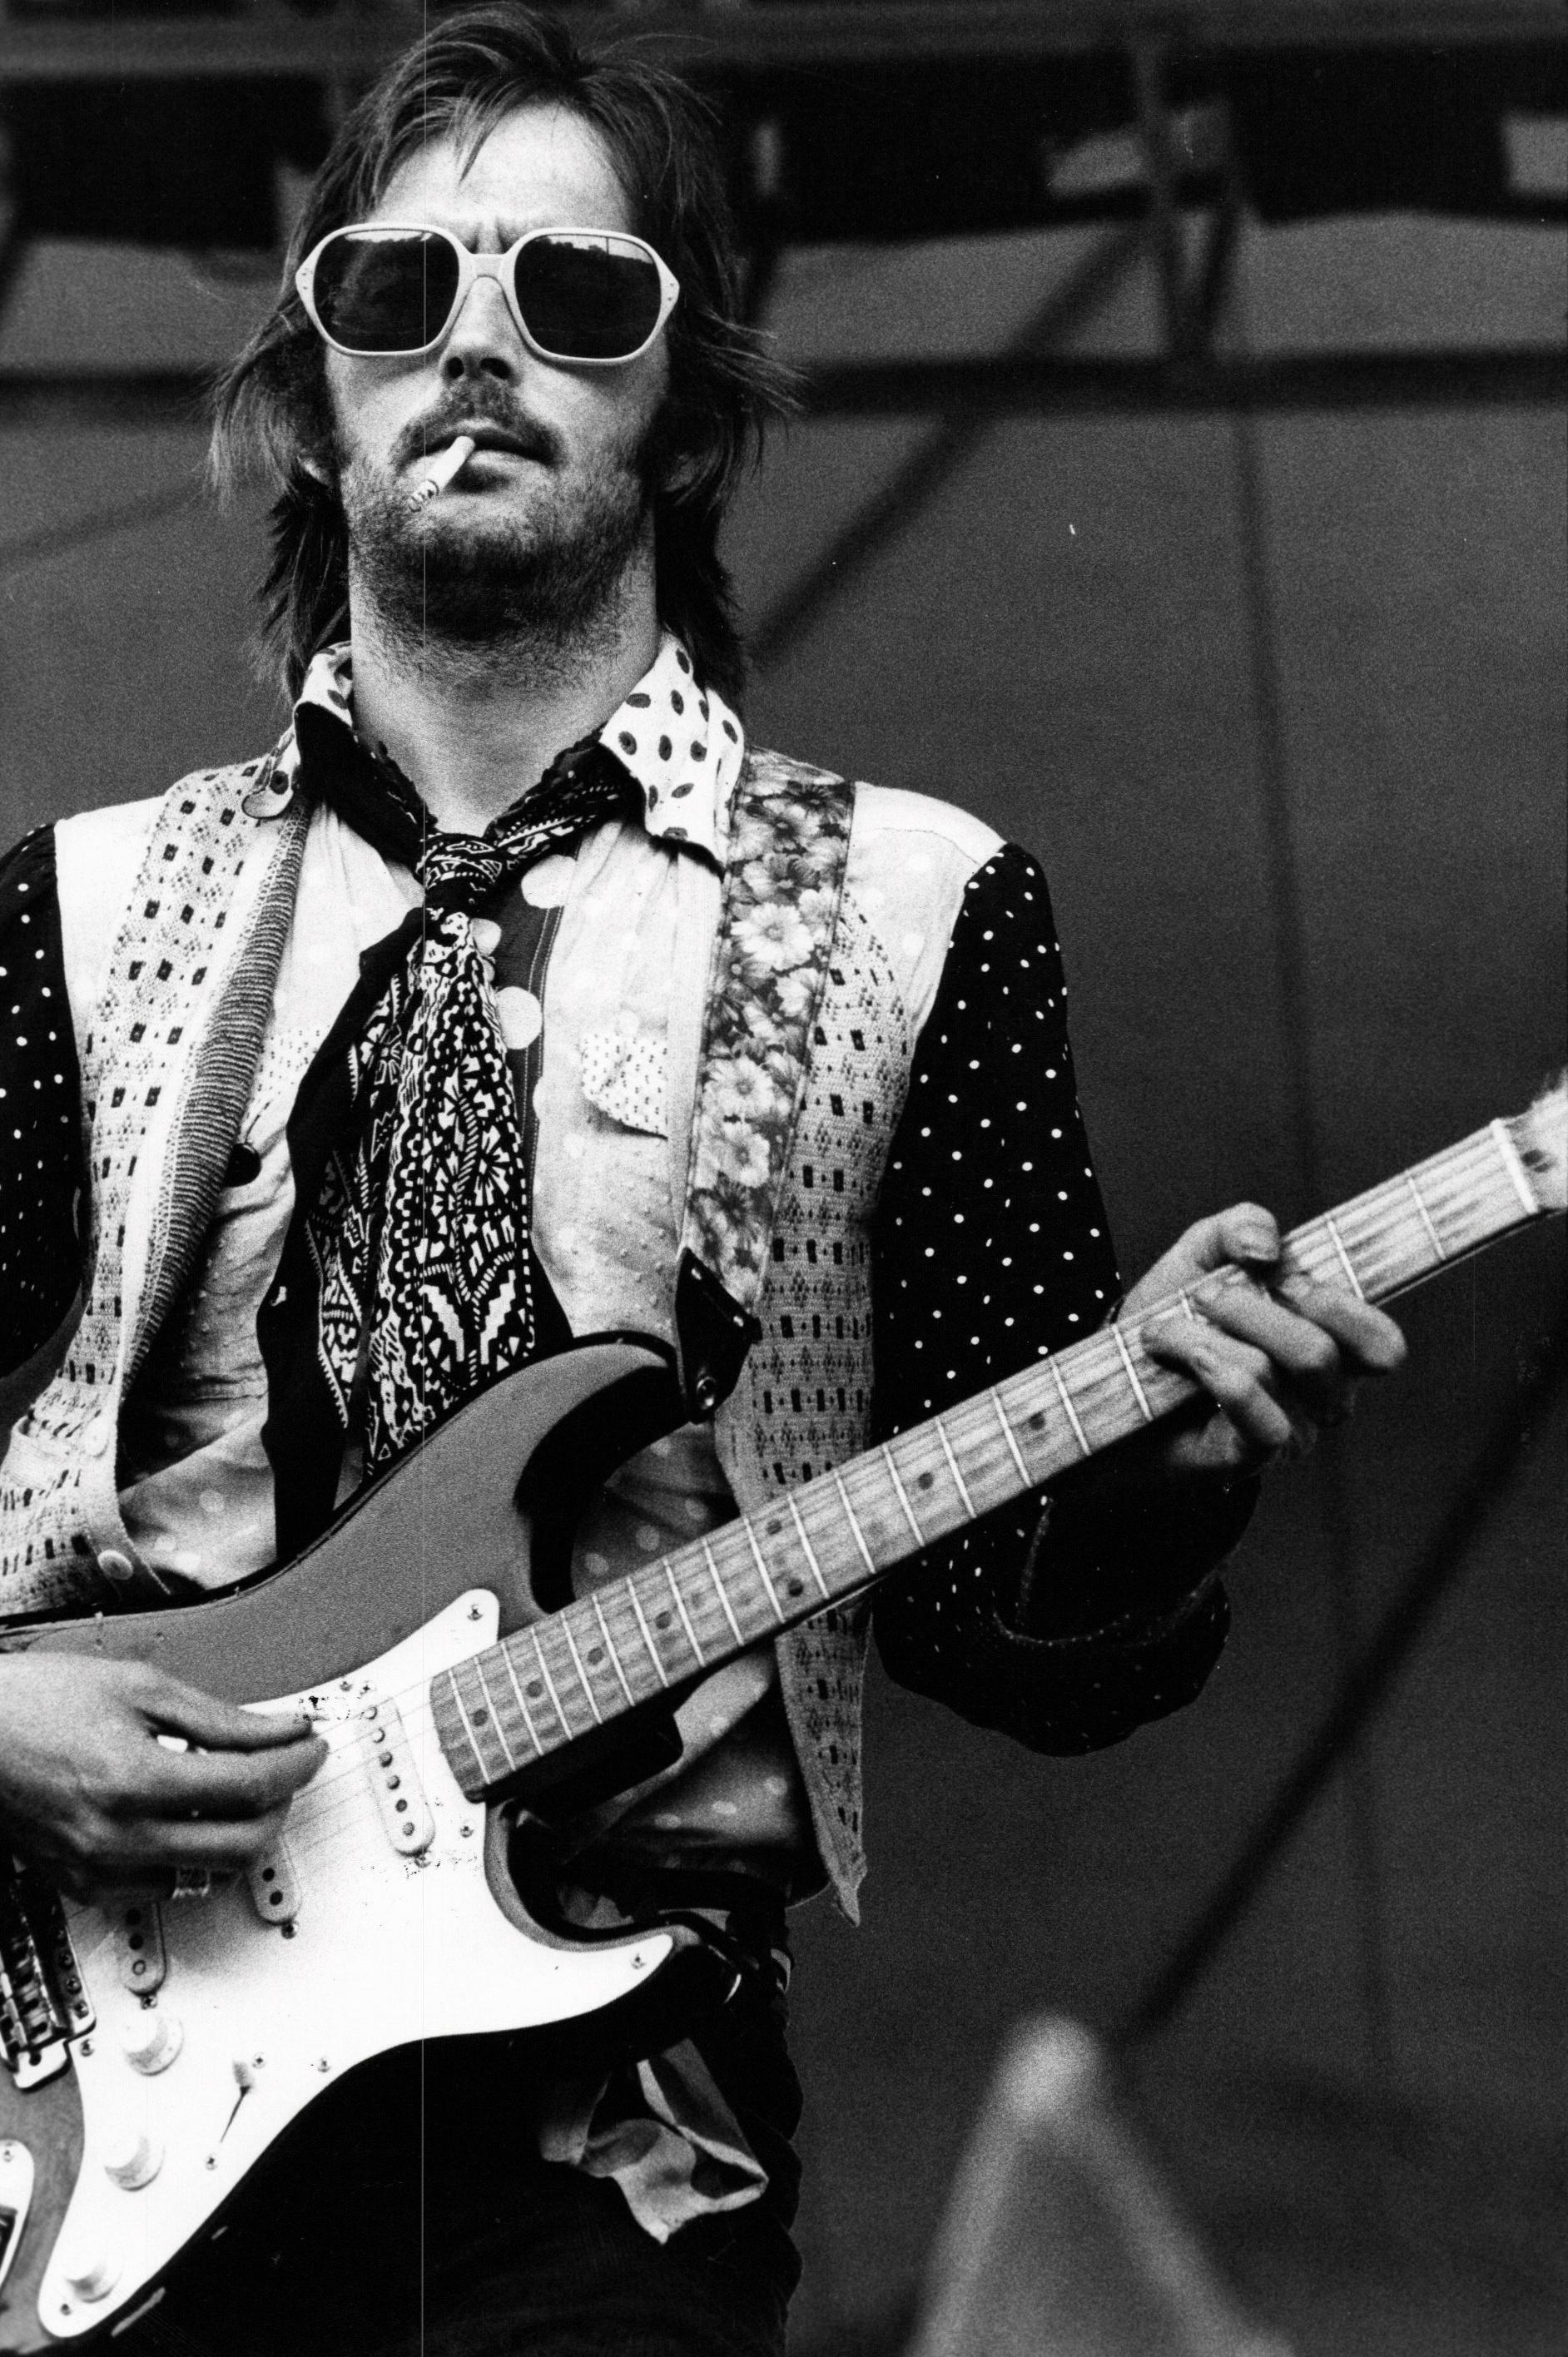 Unknown Portrait Photograph - Eric Clapton Sound Check in Philadelphia Vintage Original Photograph